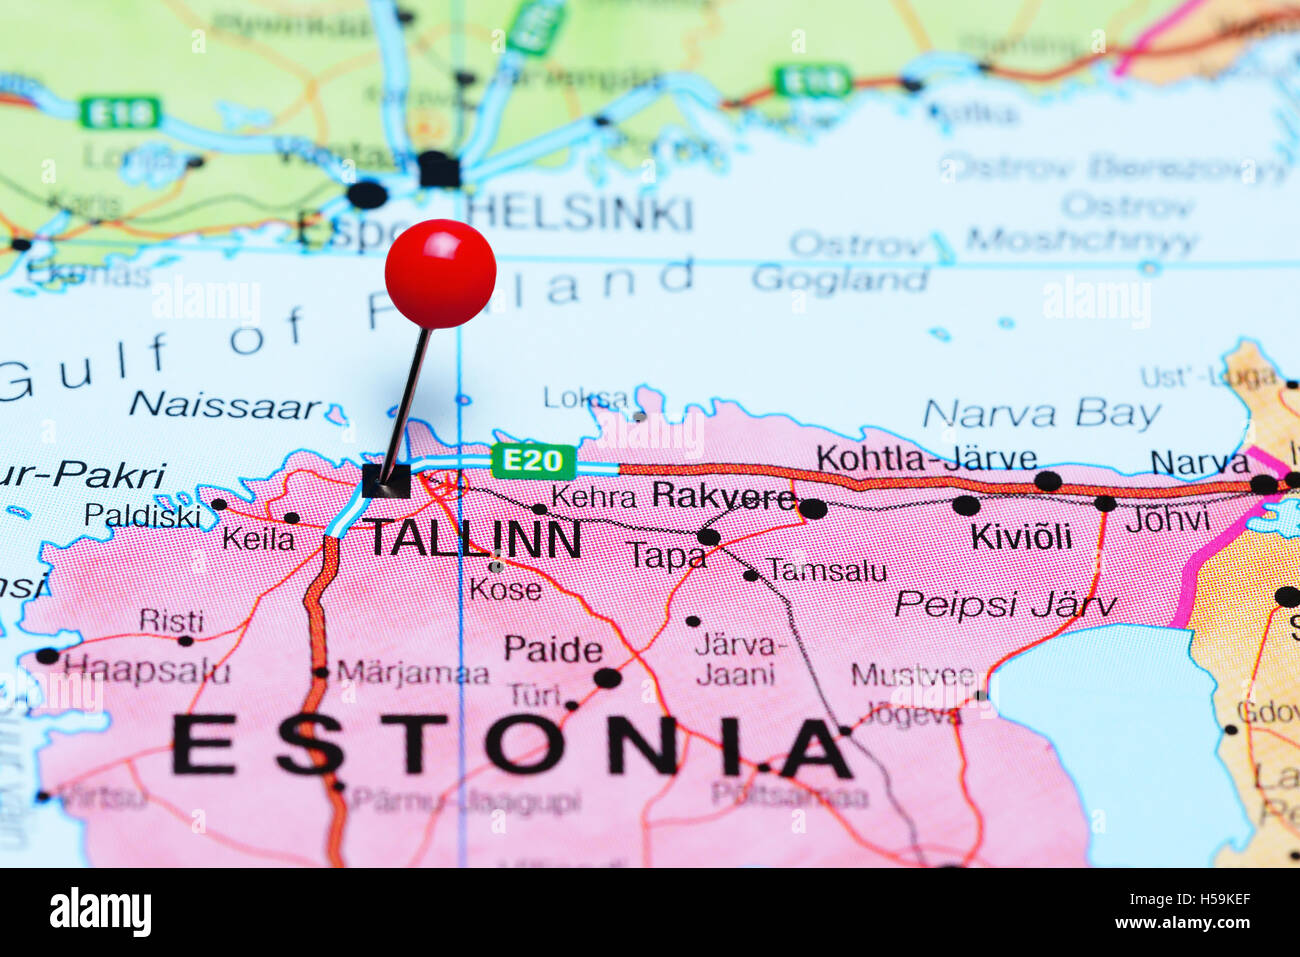 Tallinn pinned on a map of Estonia Stock Photo